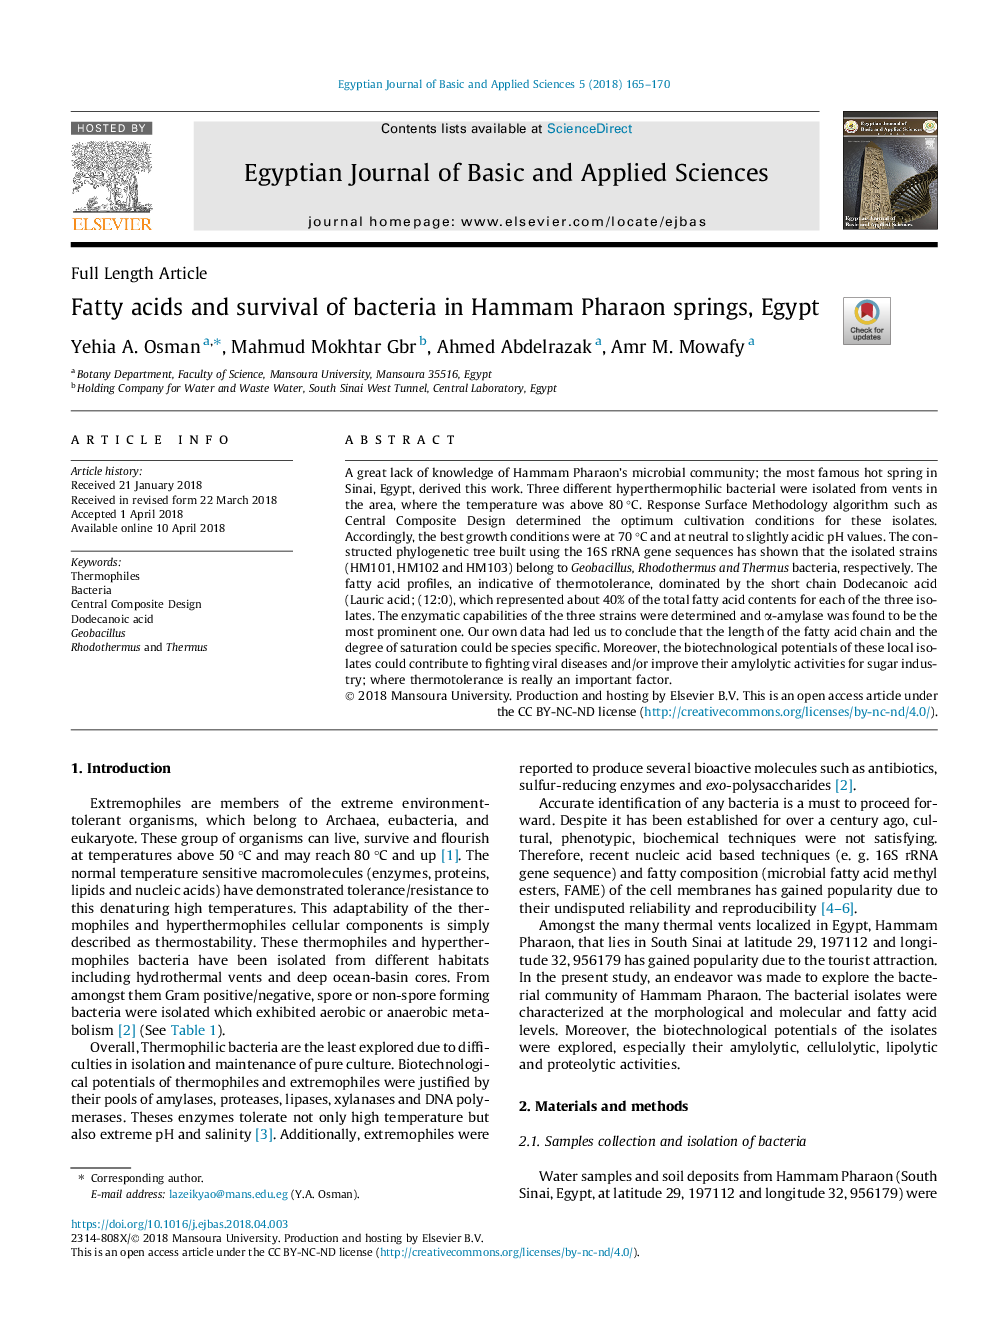 اسیدهای چرب و بقای باکتری در چشمه های هامام فرعون، مصر 